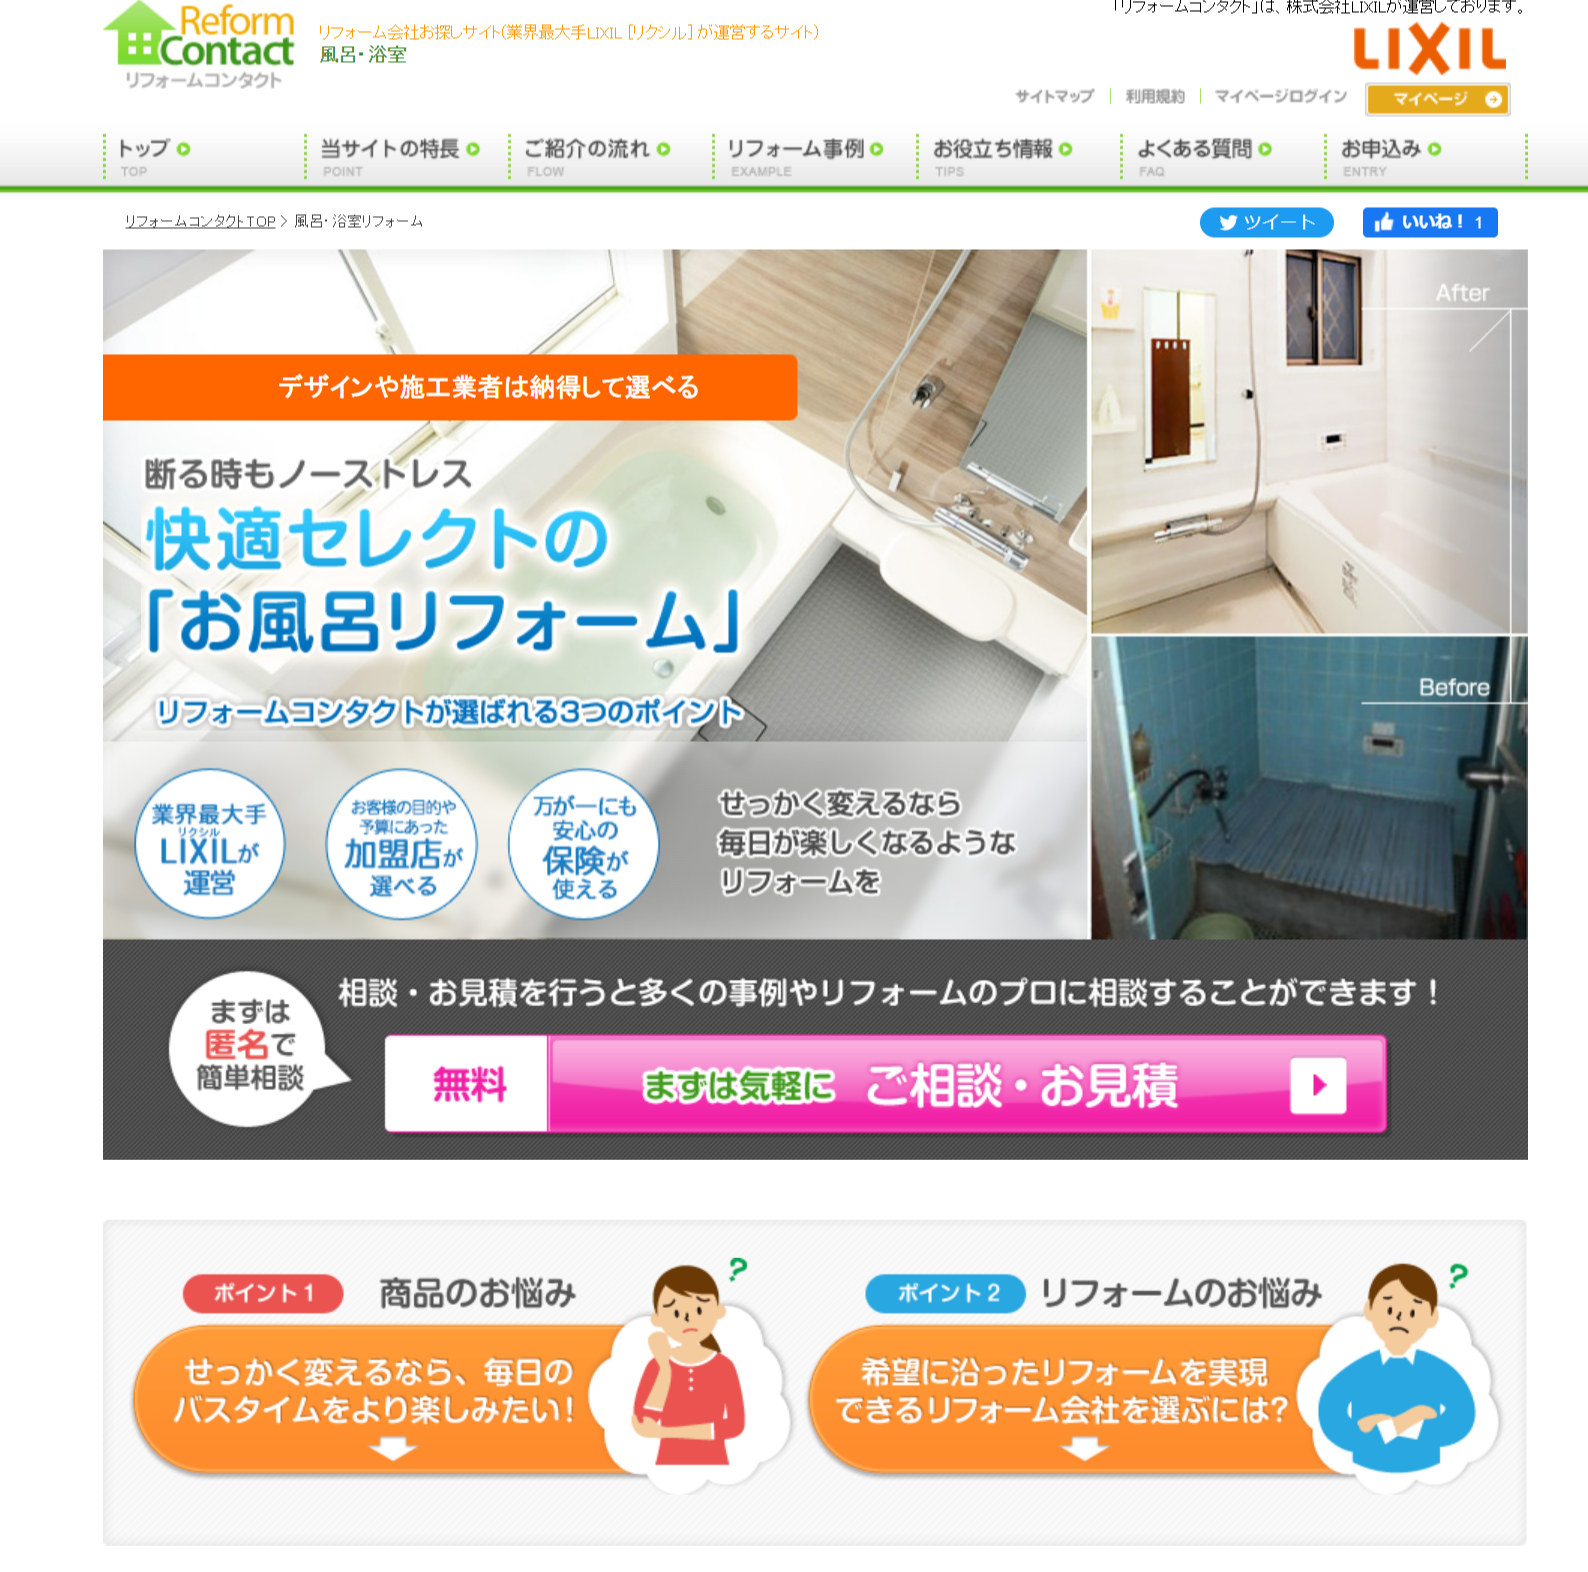 株式会社LIXIL(WEB広告用LP)